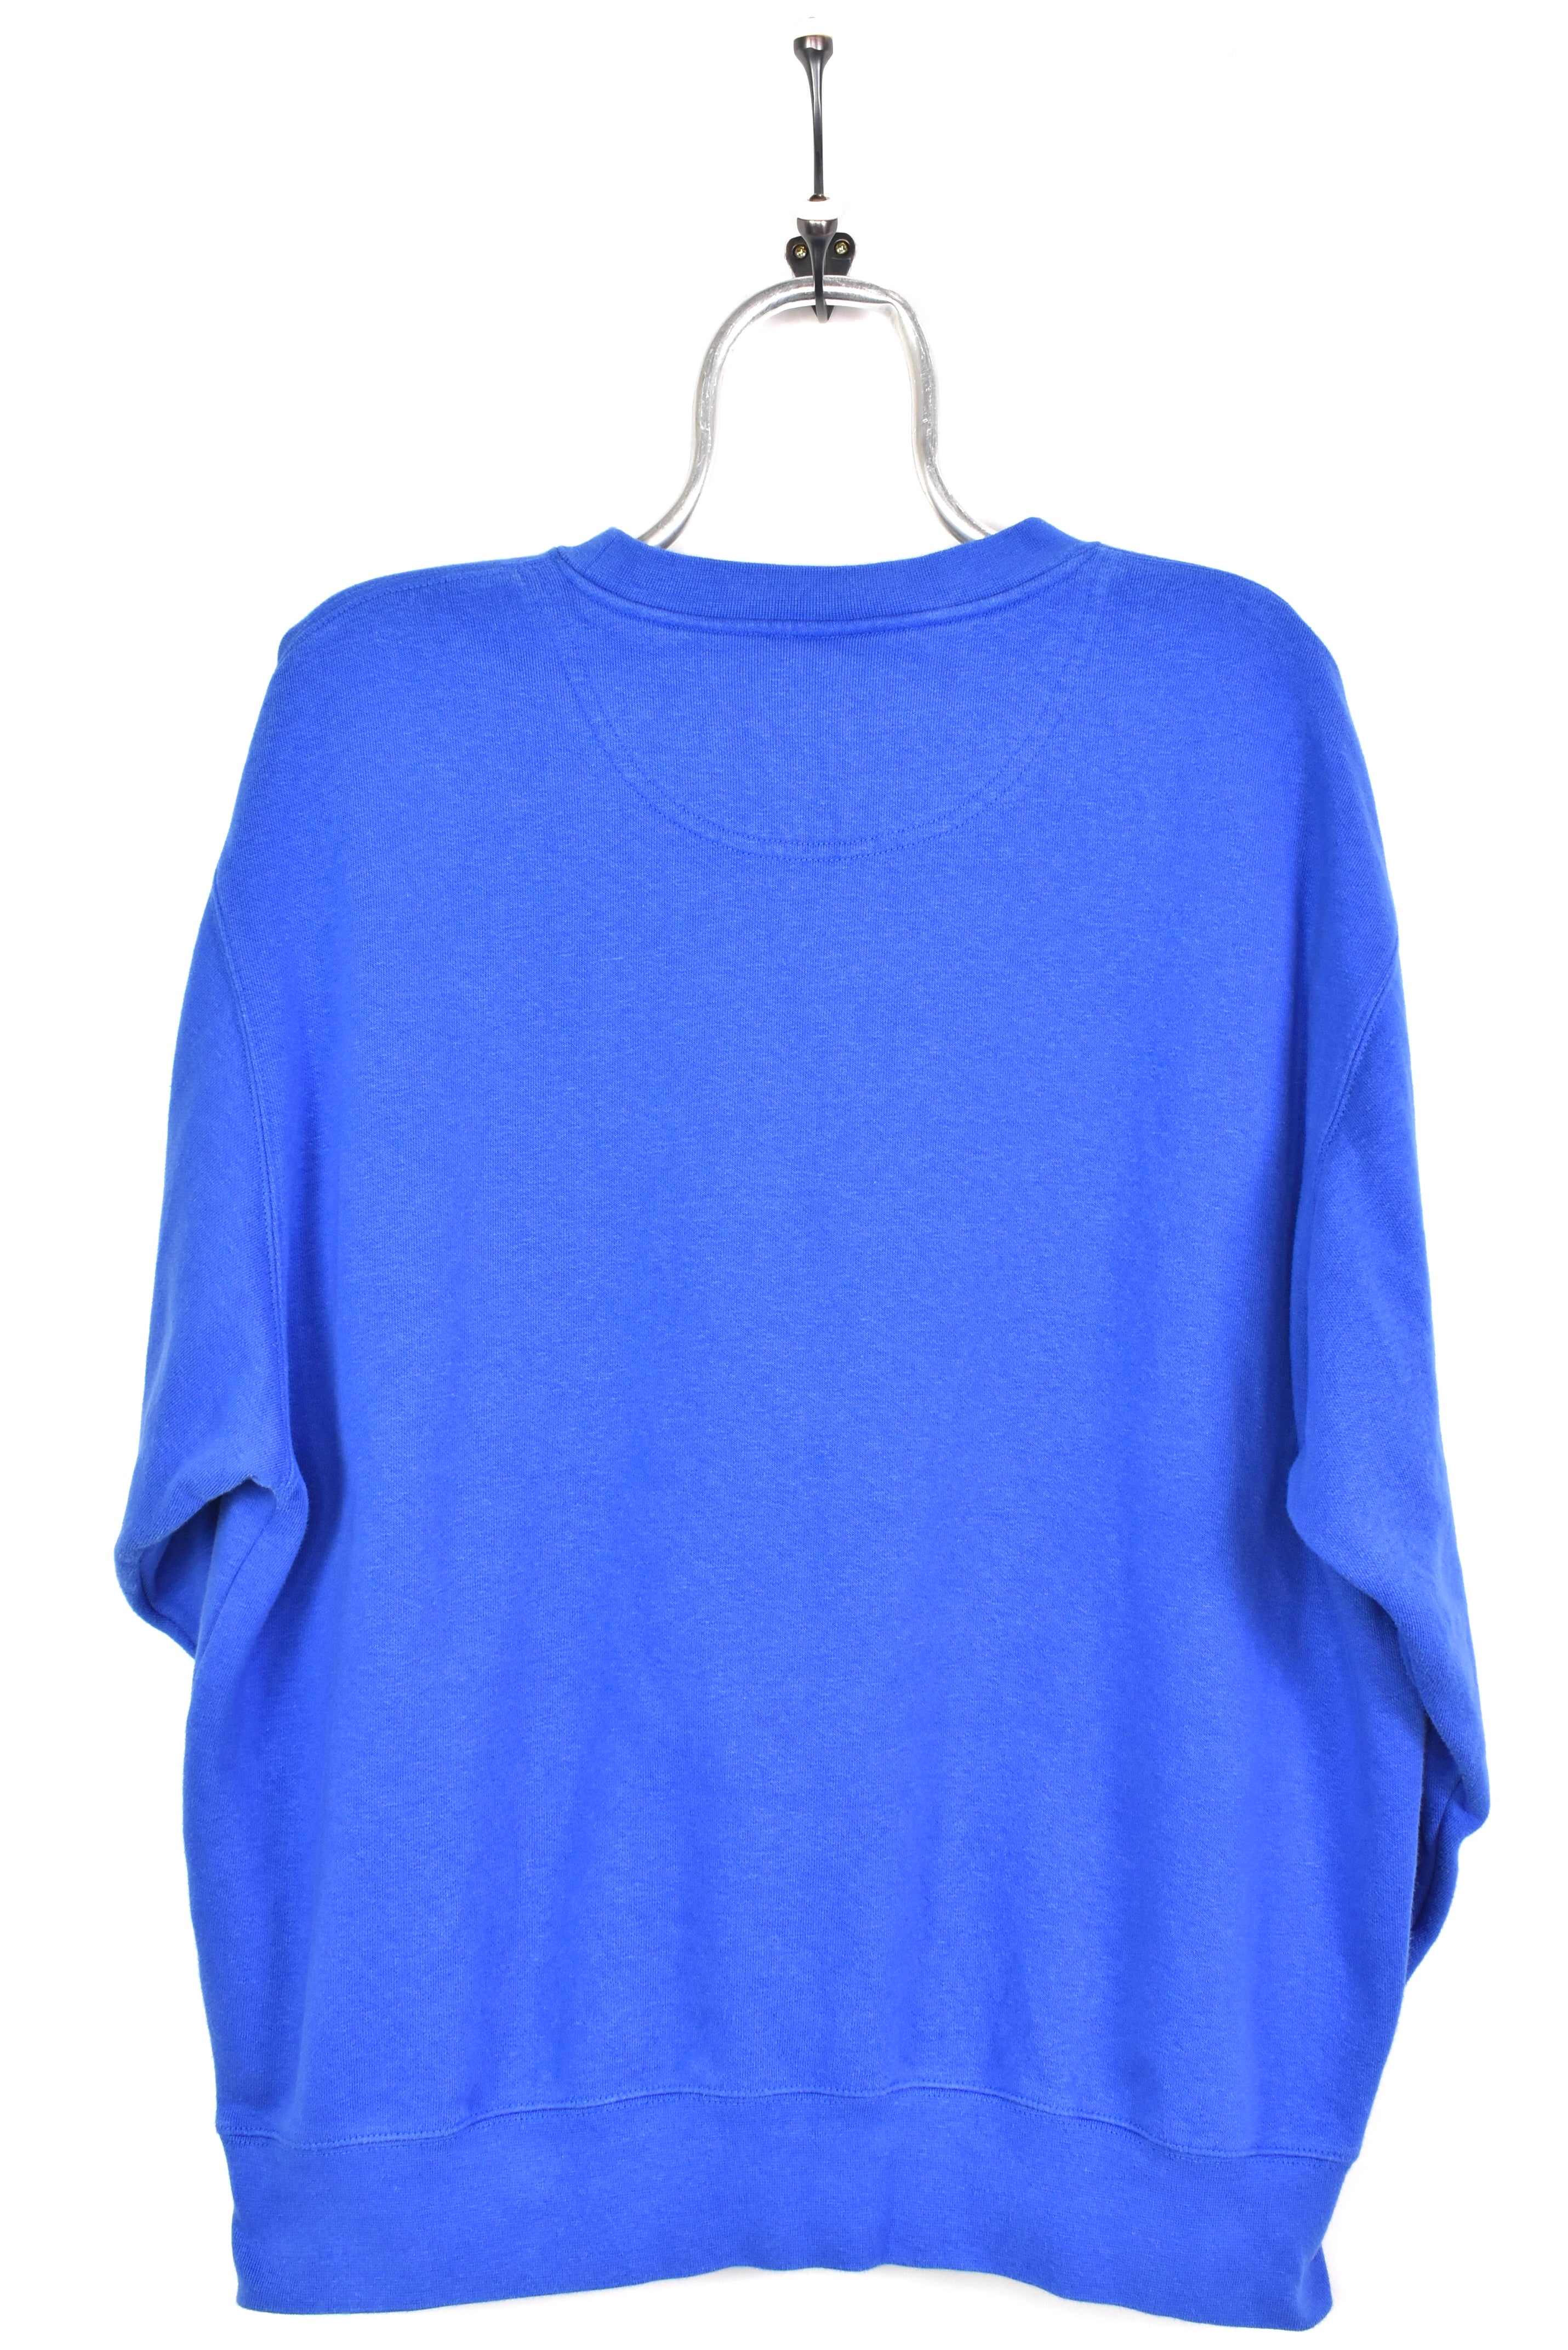 Vintage Nike Iowa Western College blue sweatshirt | XL COLLEGE